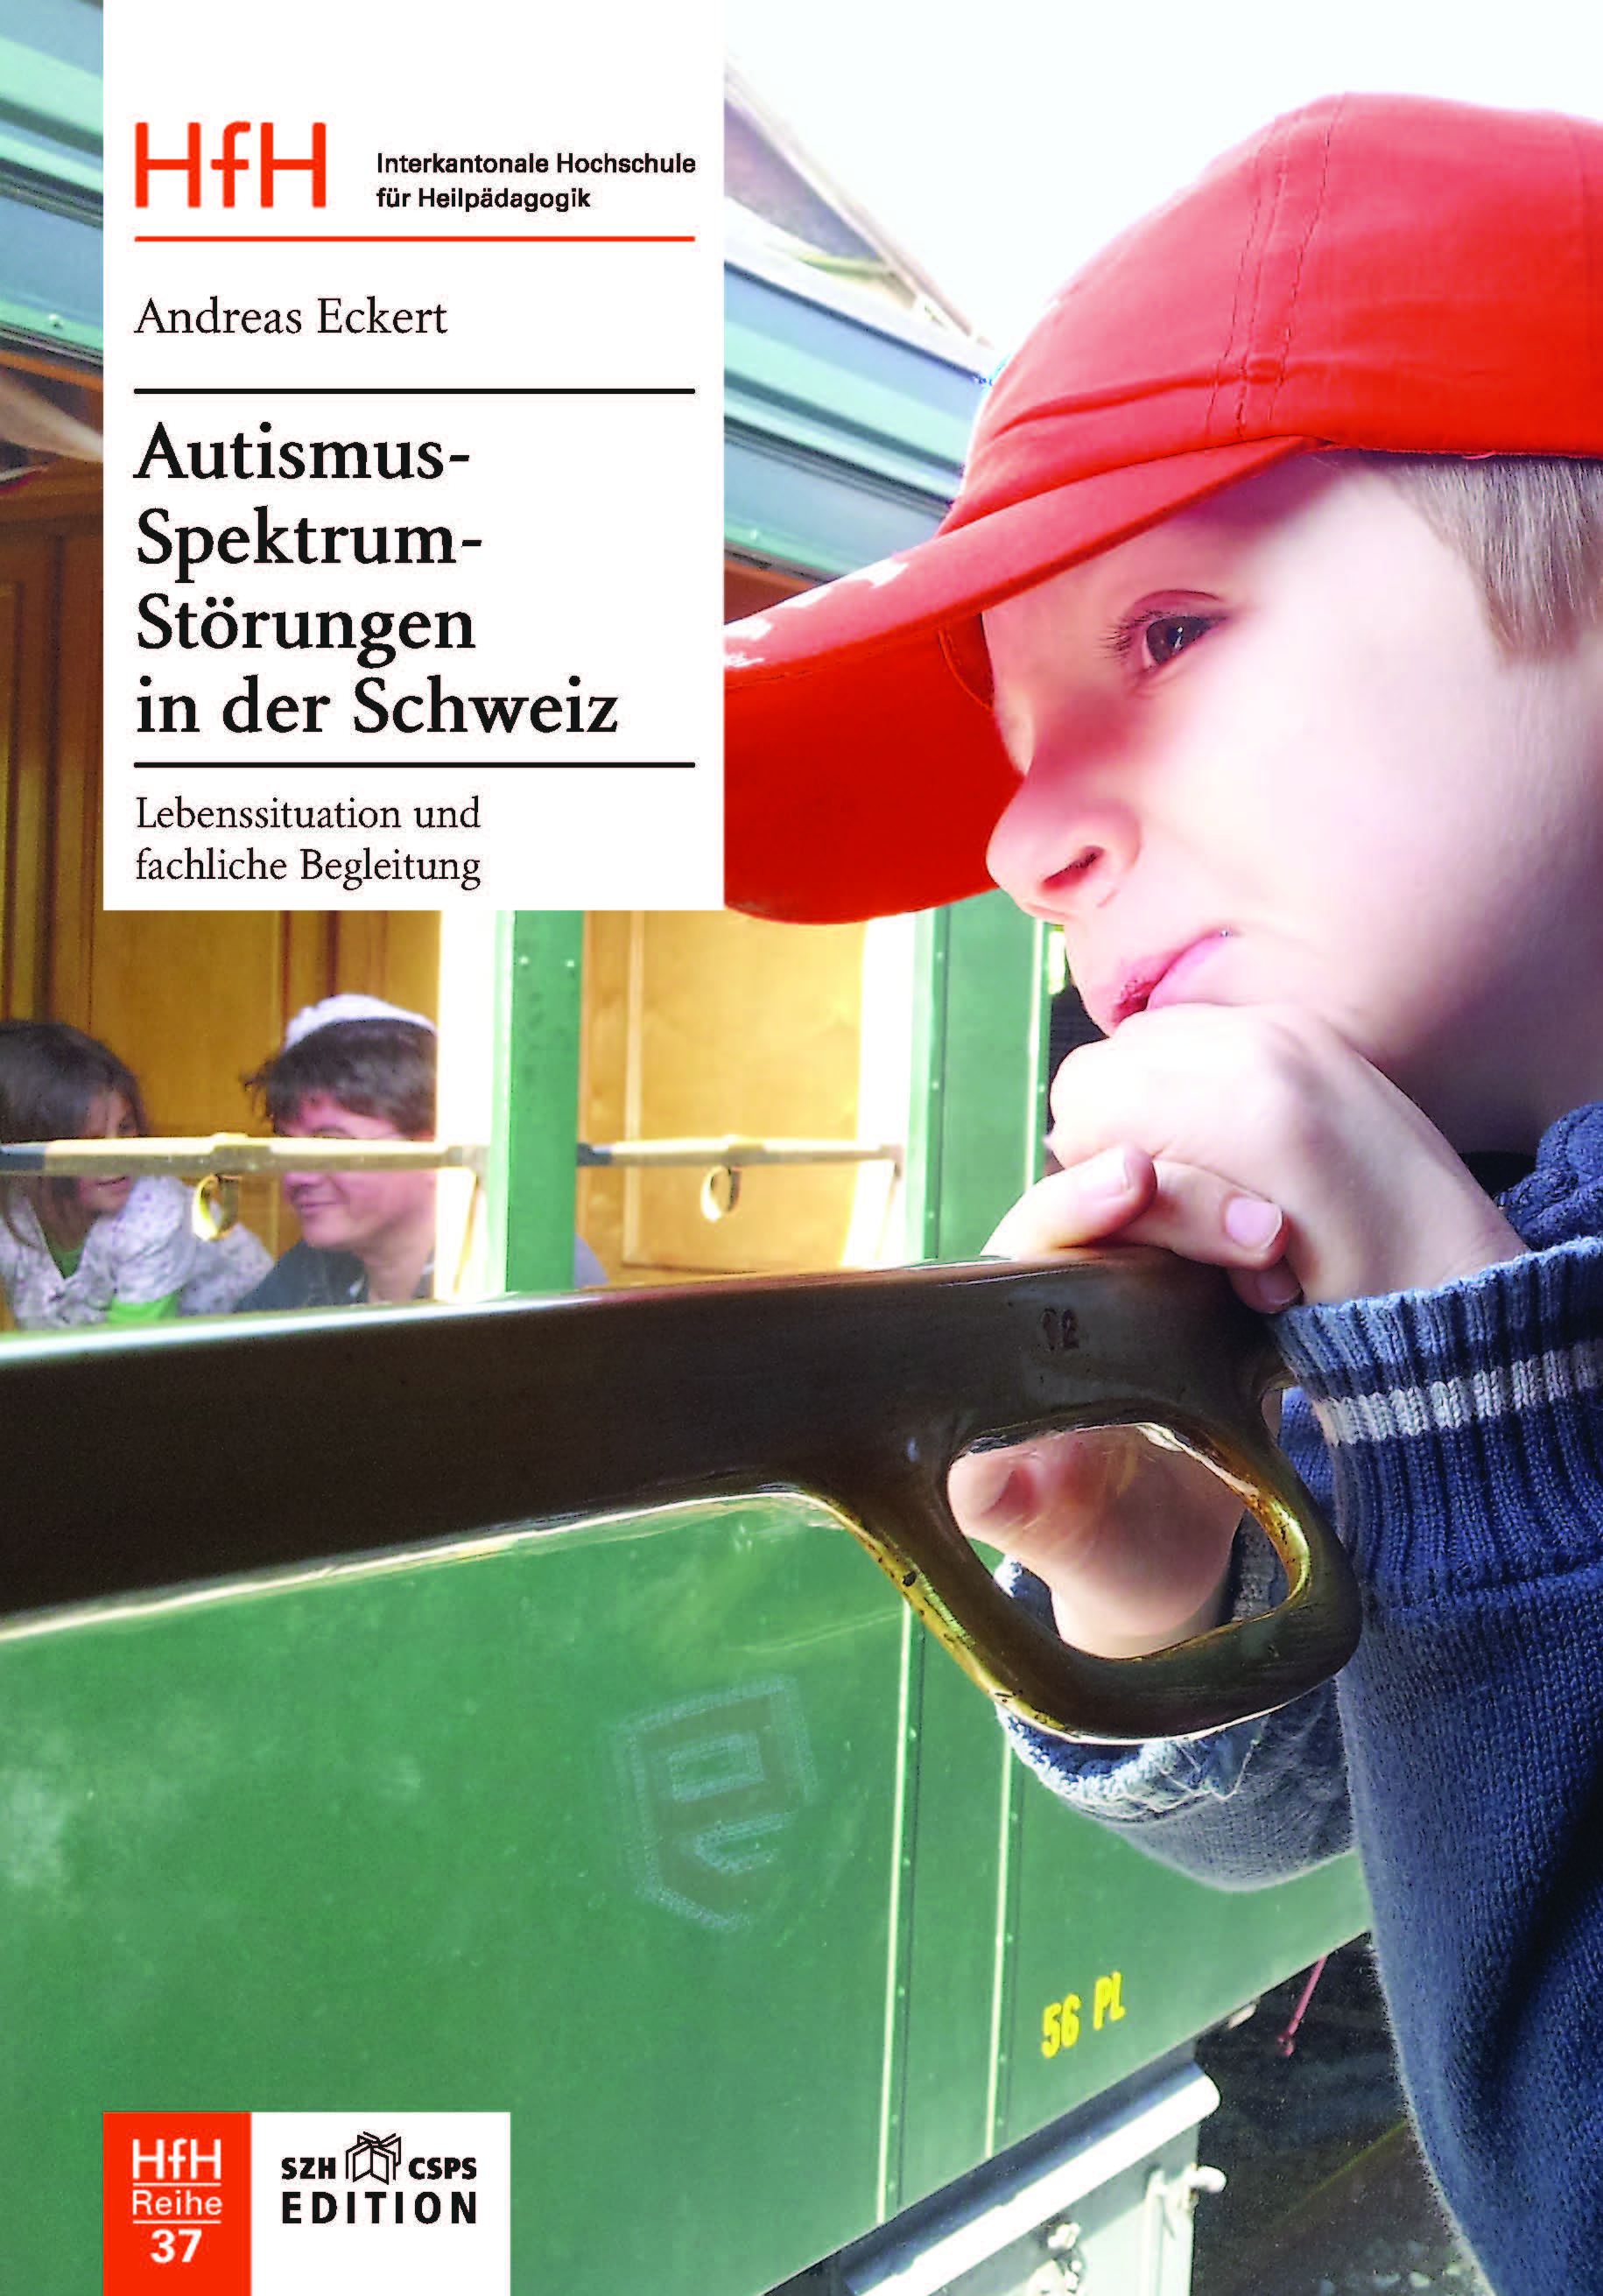  L'image montre la couverture du livre. On y voit un garçon qui regarde par la fenêtre du train. 